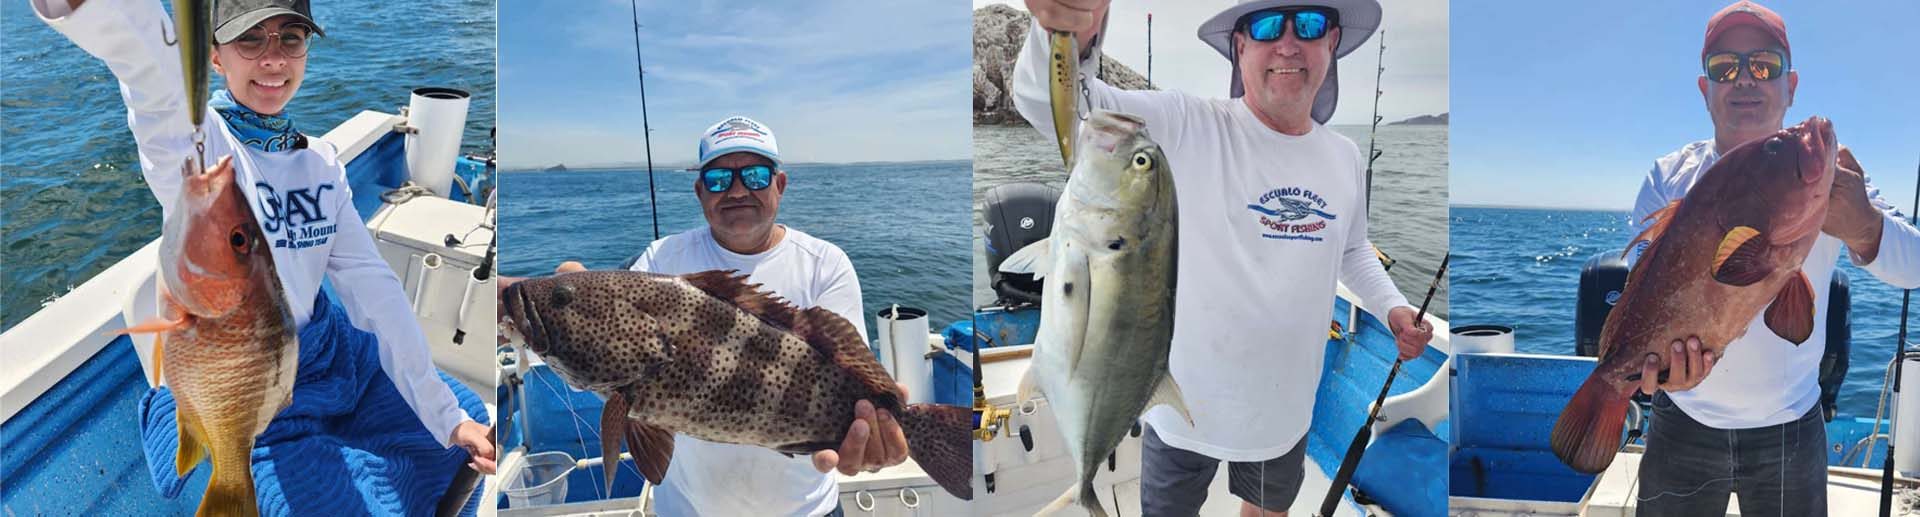 PESCA DEPORTIVA DE FONDO EN MAZATLAN - Escualo Sport Fishing Mazatlán